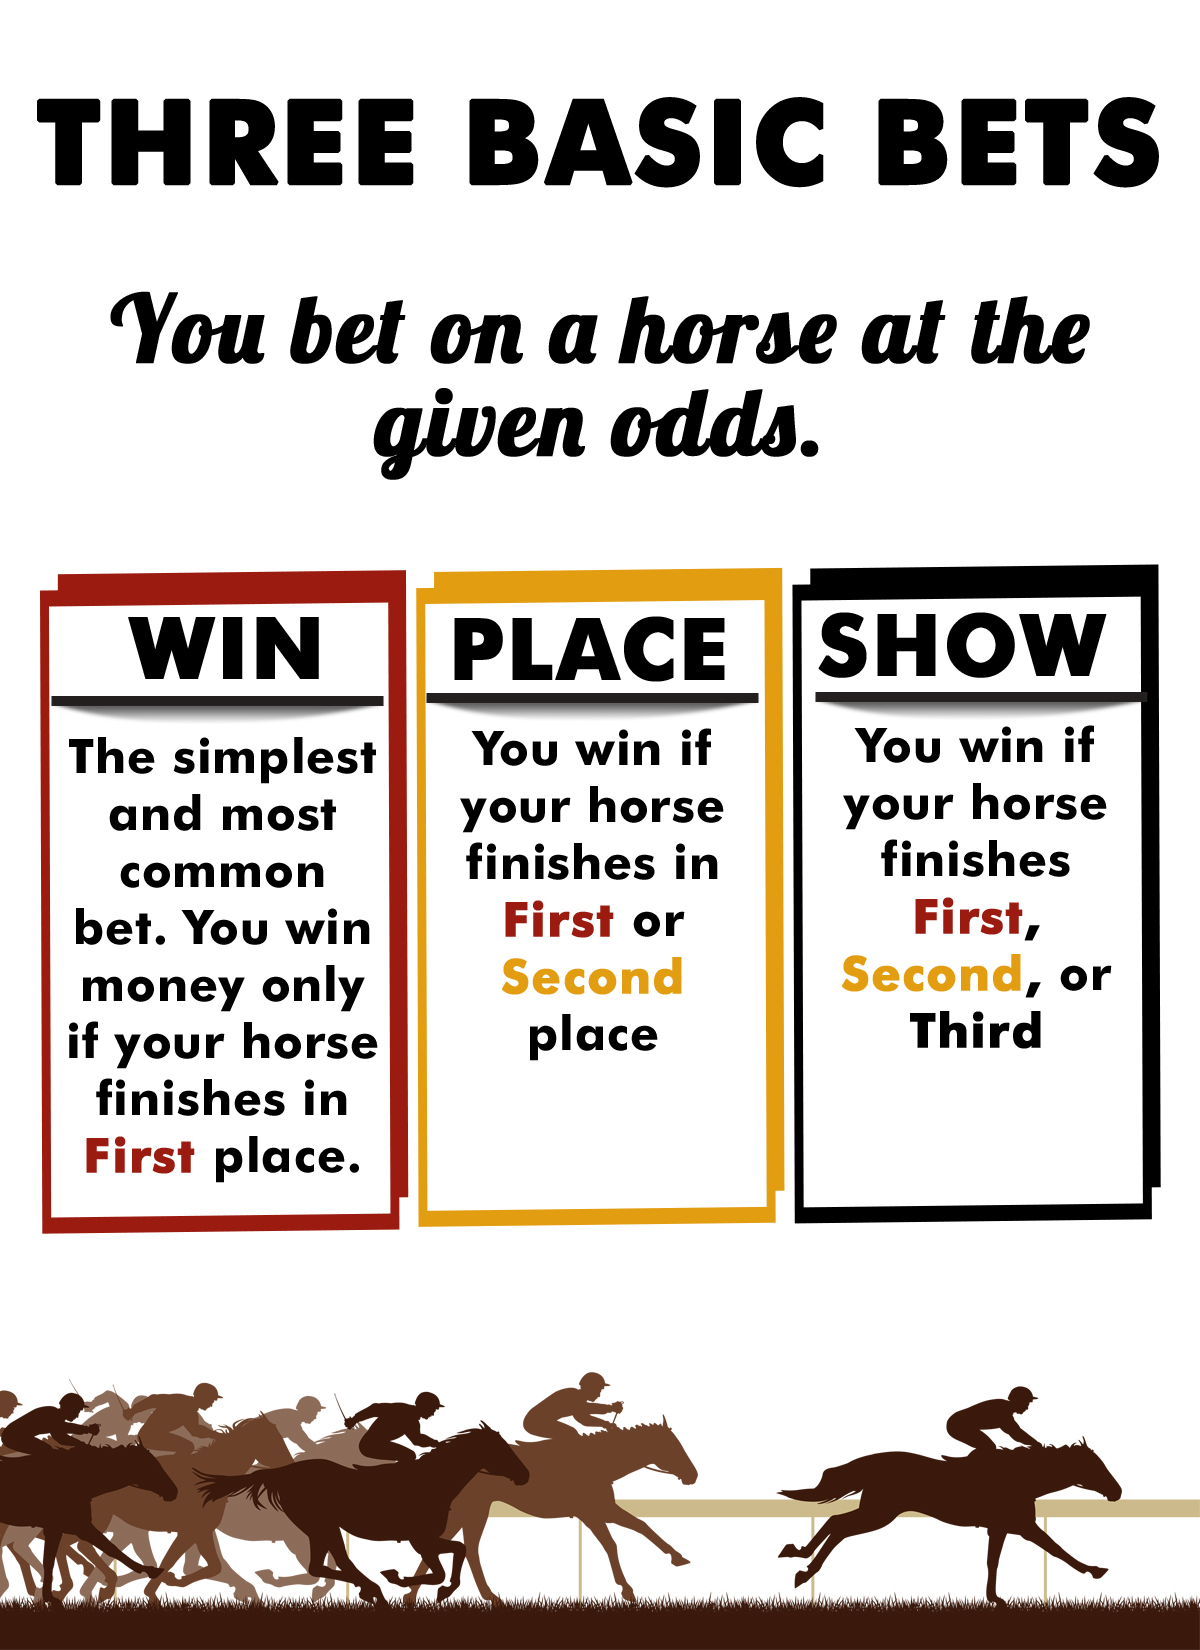 Horse betting place show hukum forex menurut mui